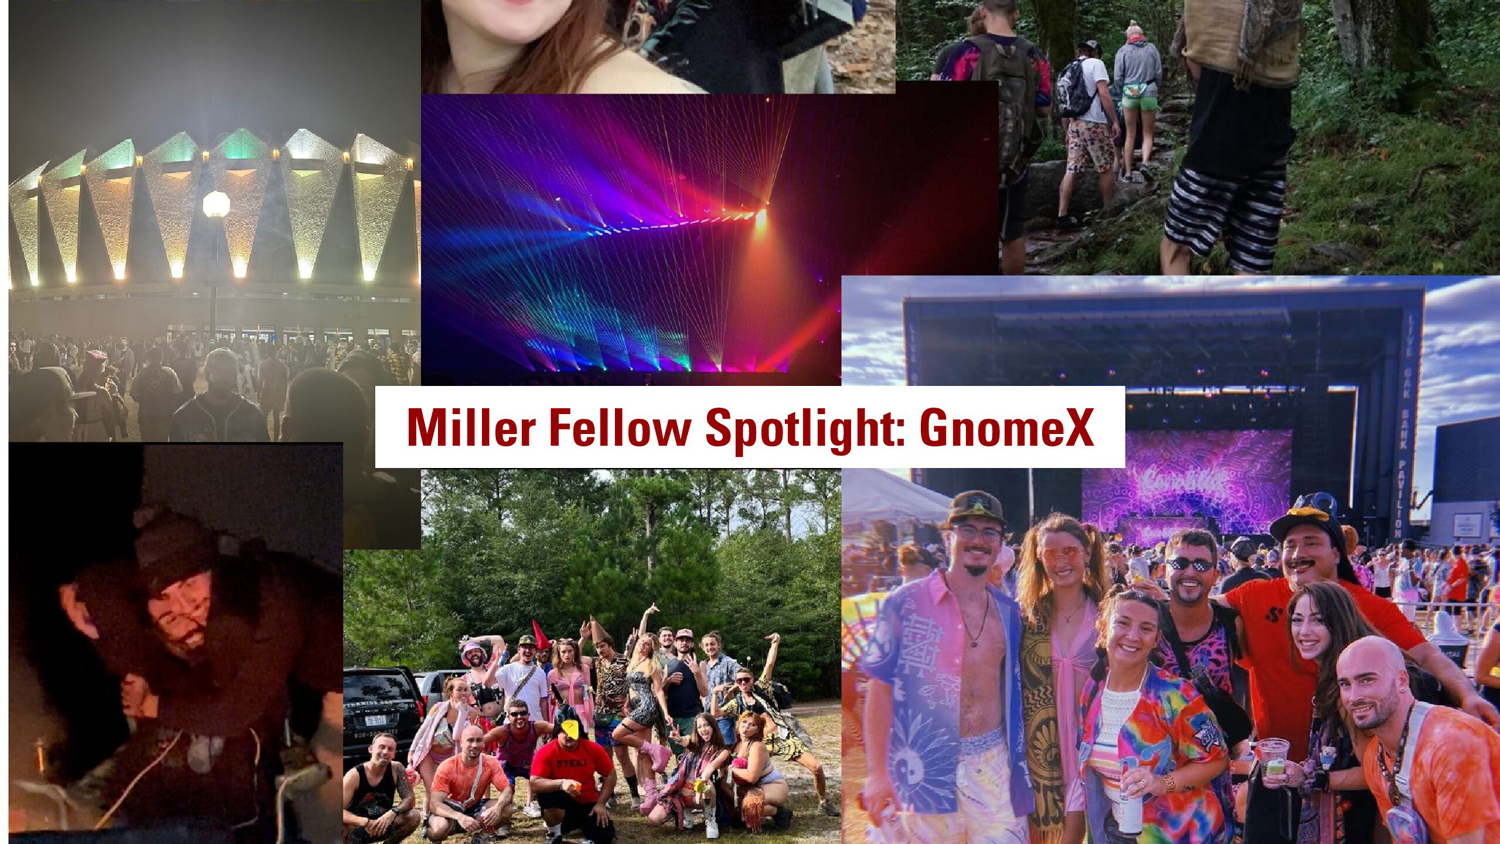 Miller Fellow Spotlight infographic